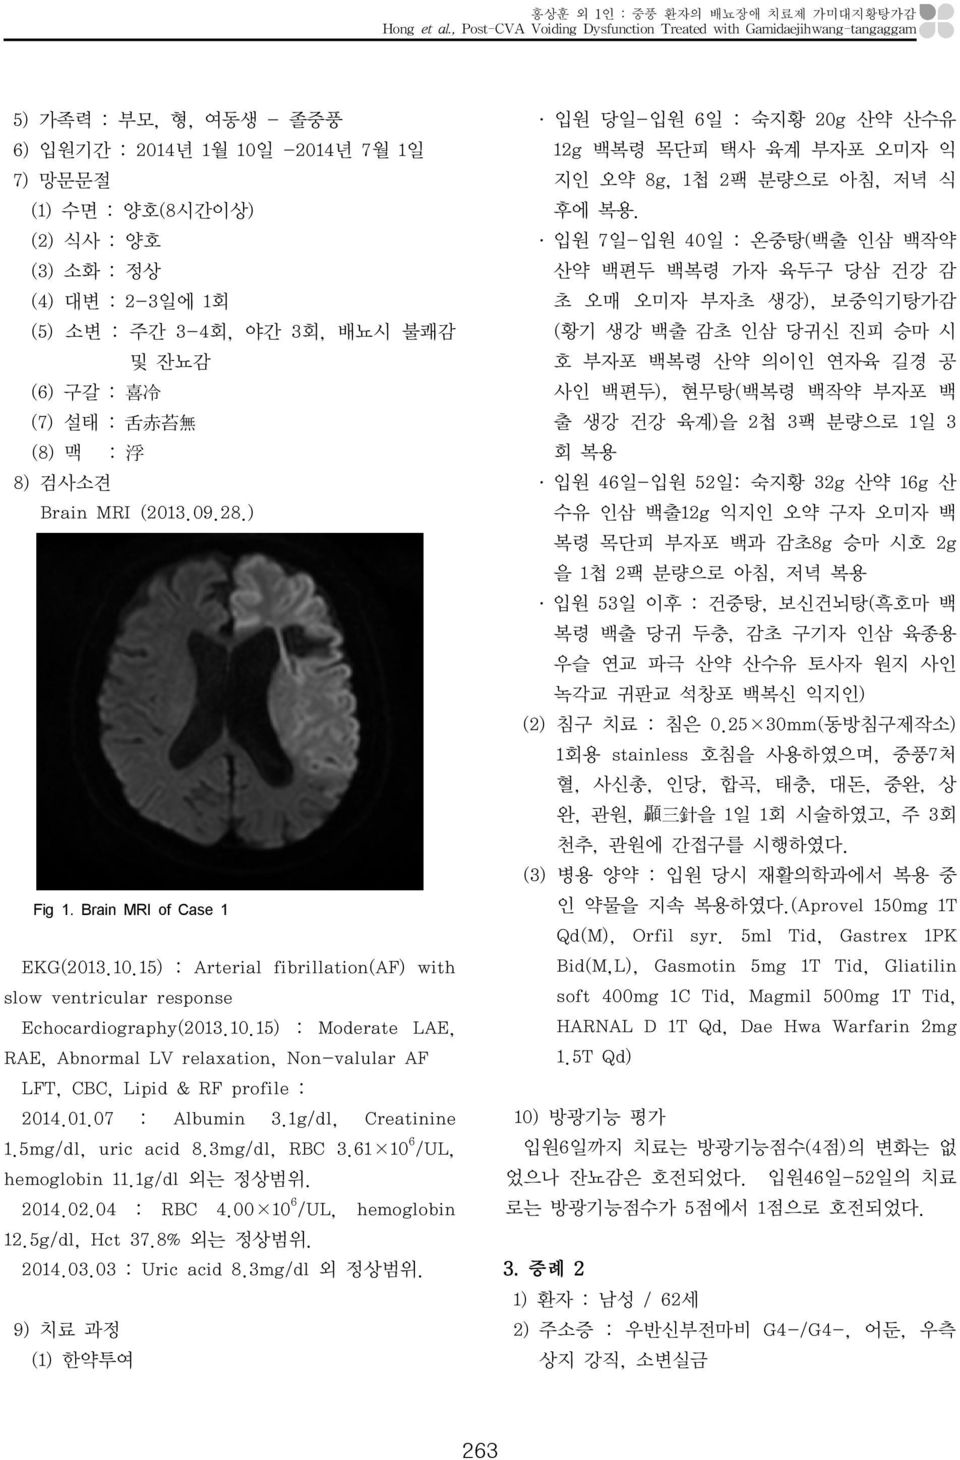 소변 : 주간 3-4회, 야간 3회, 배뇨시 불쾌감 및 잔뇨감 (6) 구갈 : 喜 冷 (7) 설태 : 舌 赤 苔 無 (8) 맥 : 浮 8) 검사소견 Brain MRI (2013.09.28.) Fig 1. Brain MRI of Case 1 EKG(2013.10.